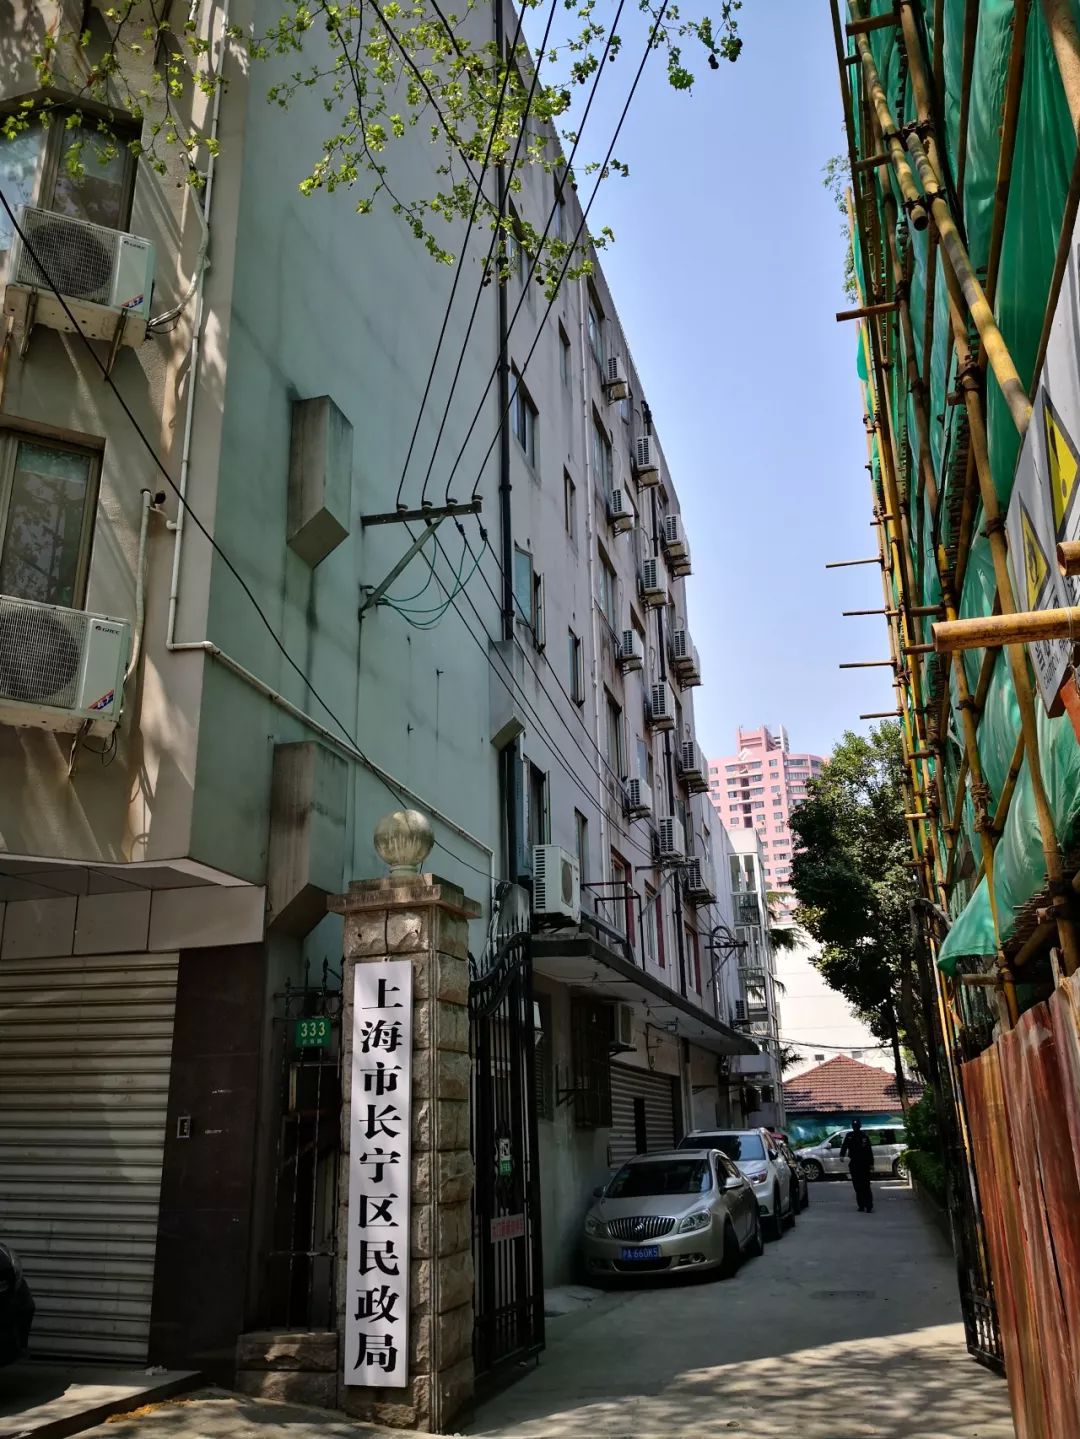 自2019年7月17日起,长宁区民政局将整体从武夷路333号搬迁至长宁路